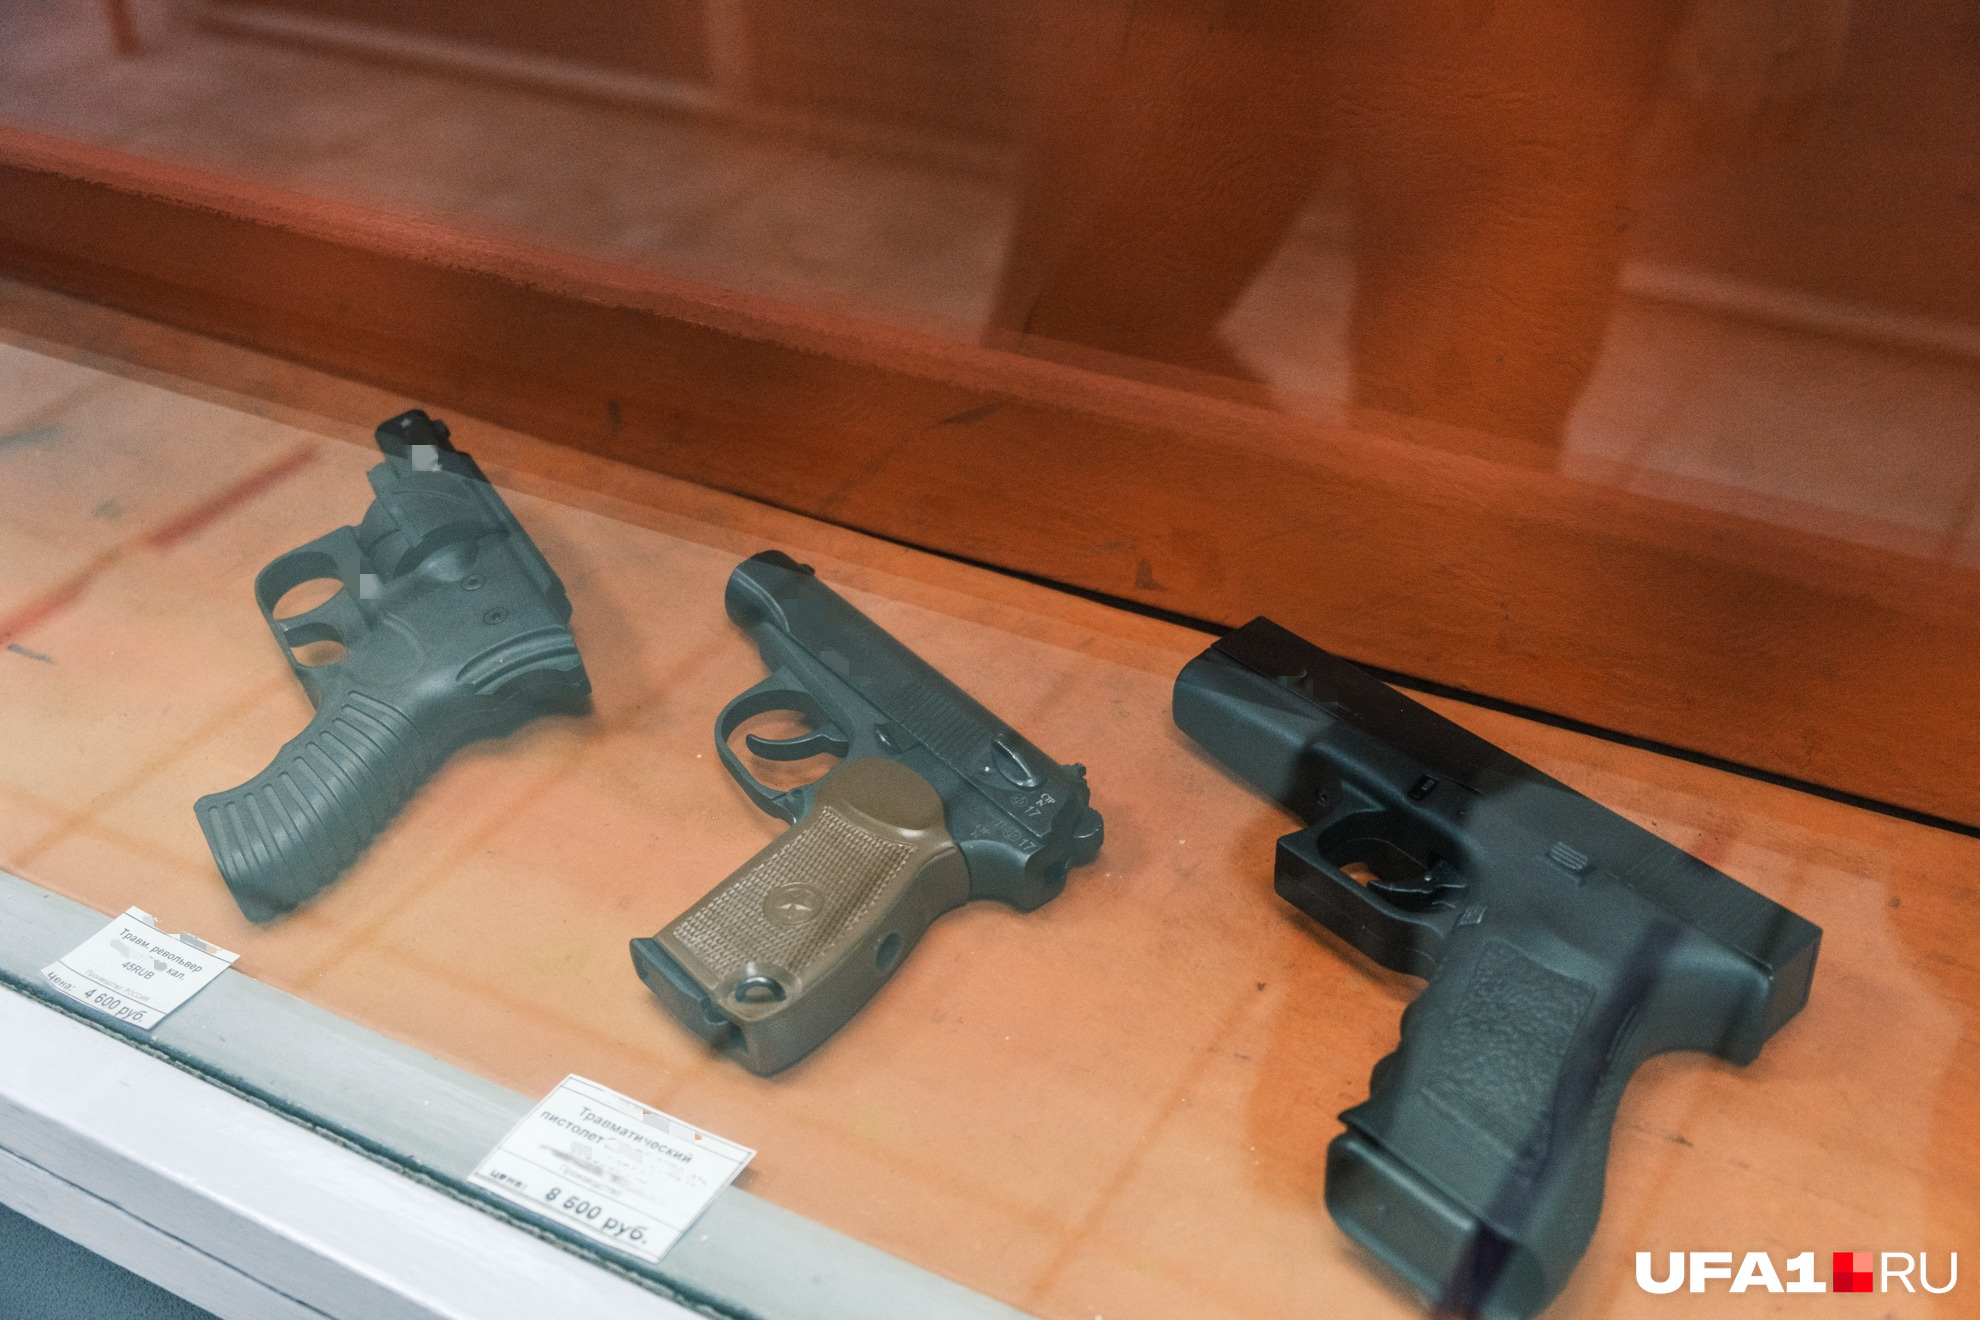 Травматическое оружие стоит недешево, но традиционный огнестрел в разы дороже